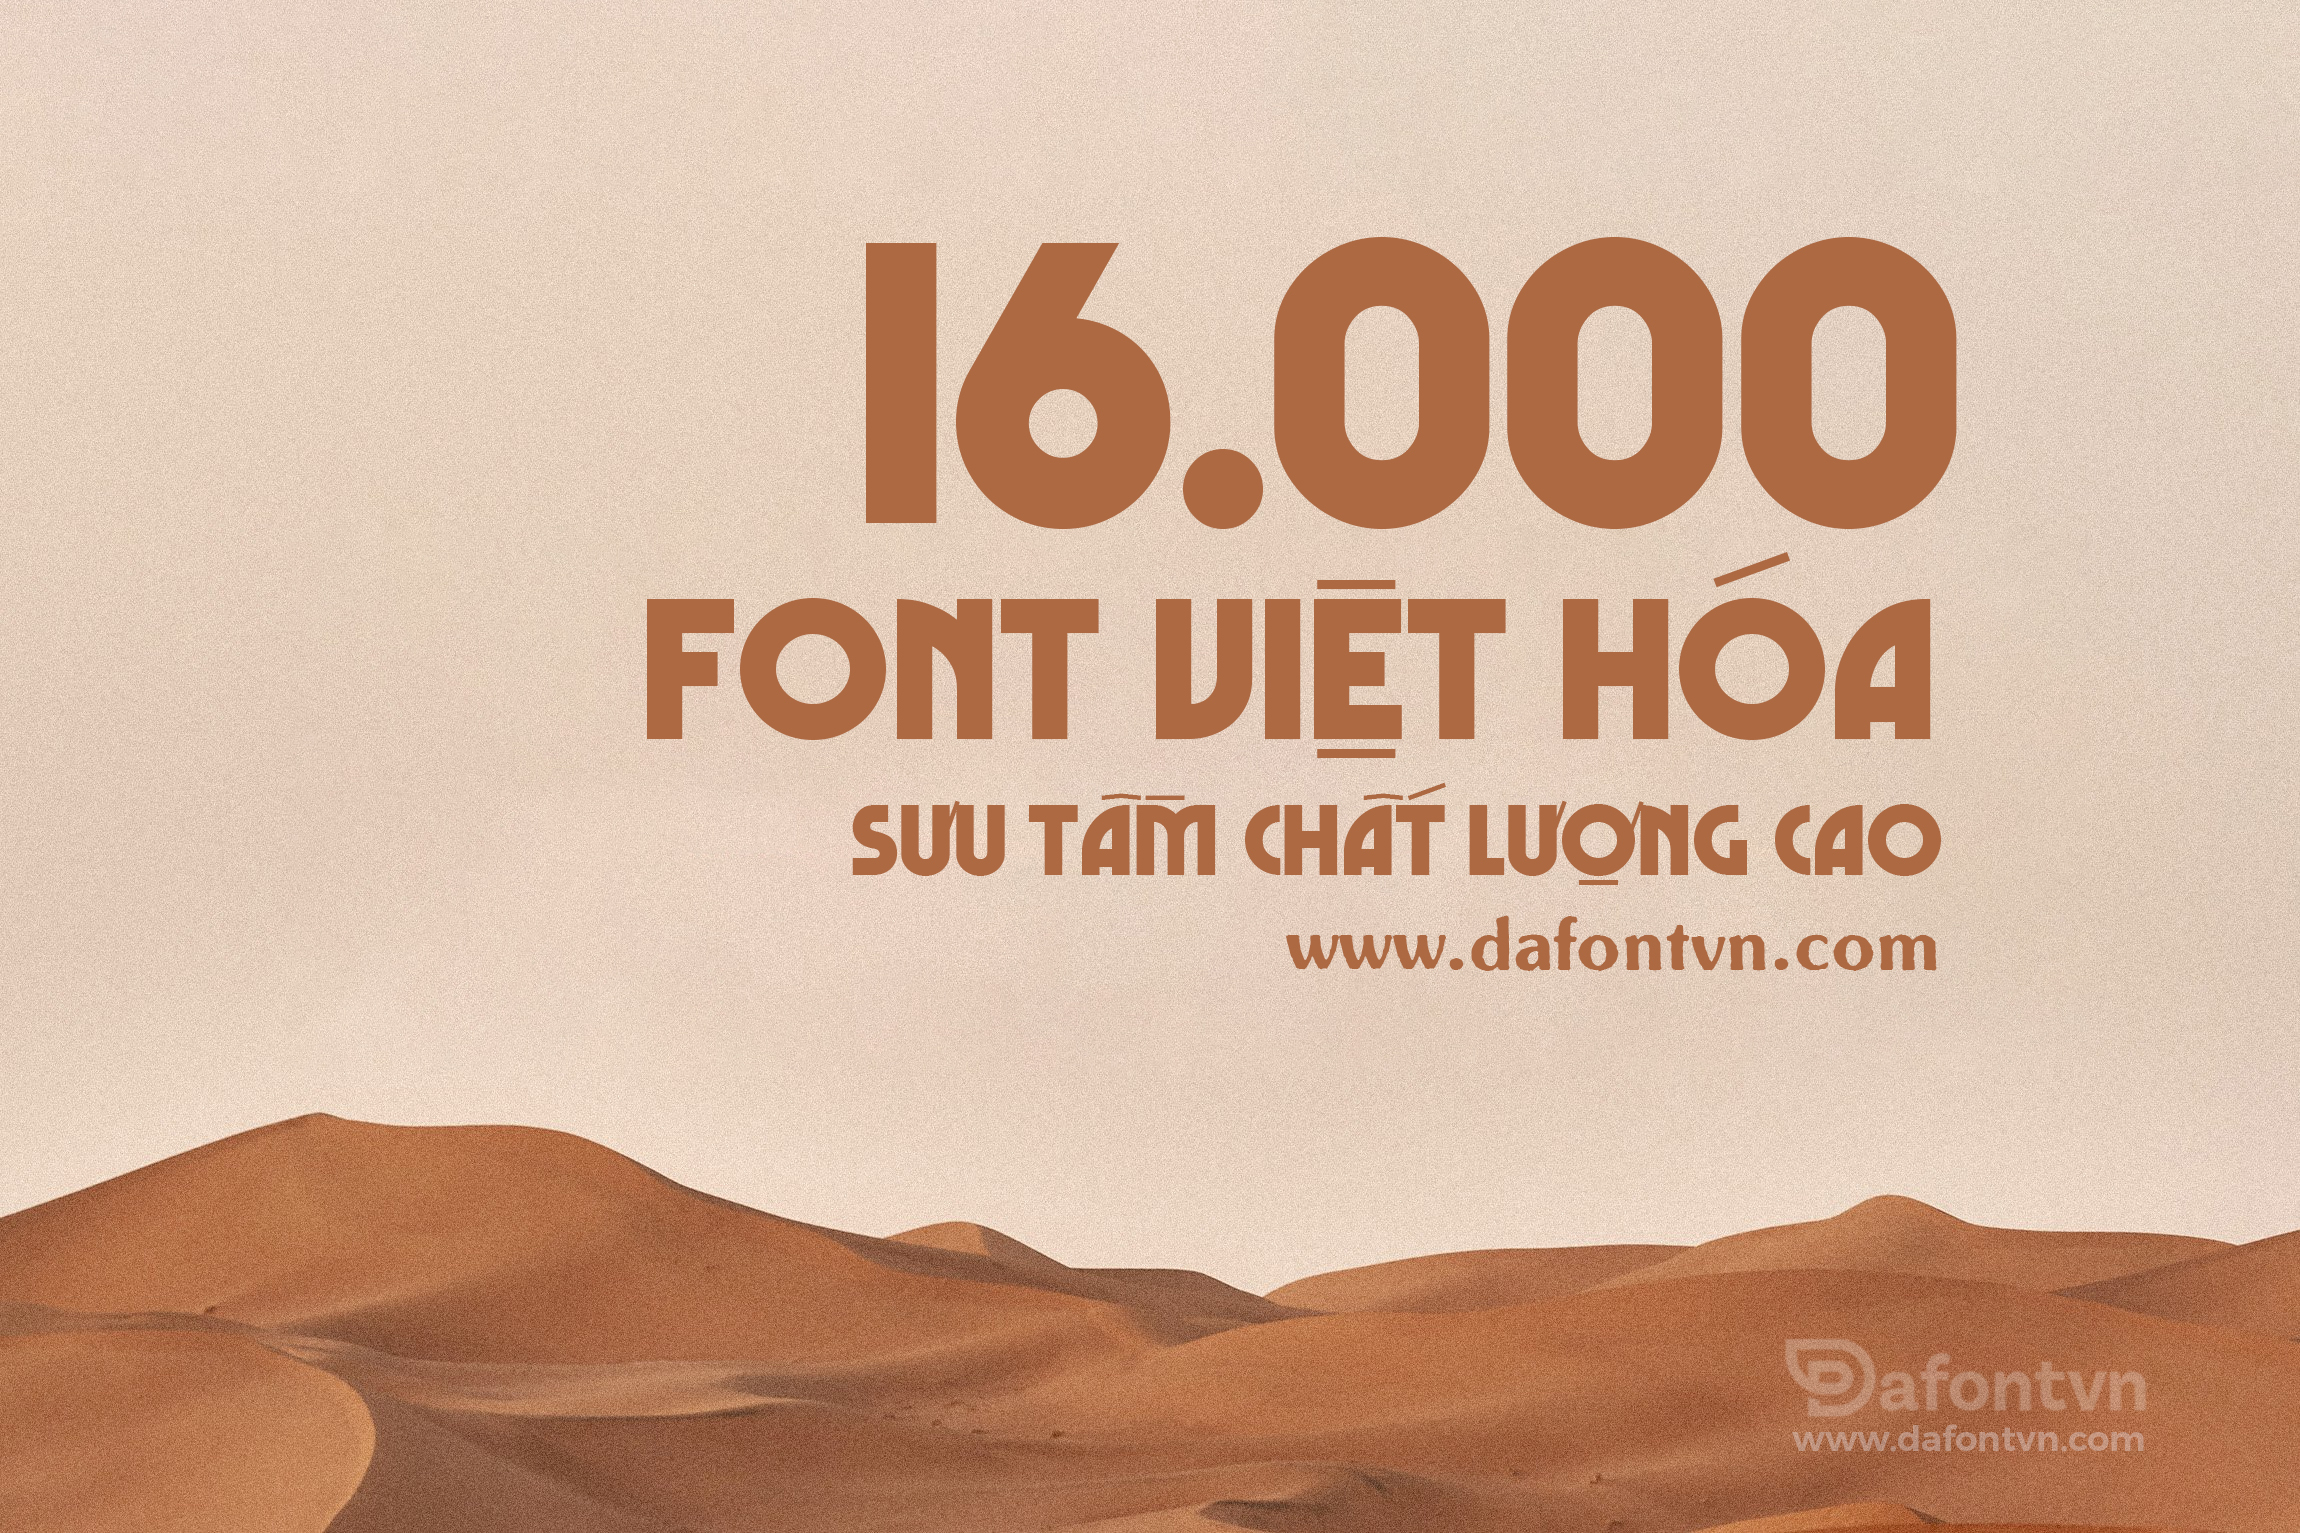 Bộ Font Việt Hóa 16.000 - Tìm kiếm bộ sưu tập font Việt hóa đầy đủ và đa dạng? Bộ font Việt hóa 16.000 sẽ là lựa chọn hoàn hảo cho những người đam mê thiết kế. Với sự lựa chọn phong phú và đa dạng, bạn sẽ không bao giờ phải lo lắng về việc tìm kiếm font phù hợp cho các dự án của mình.